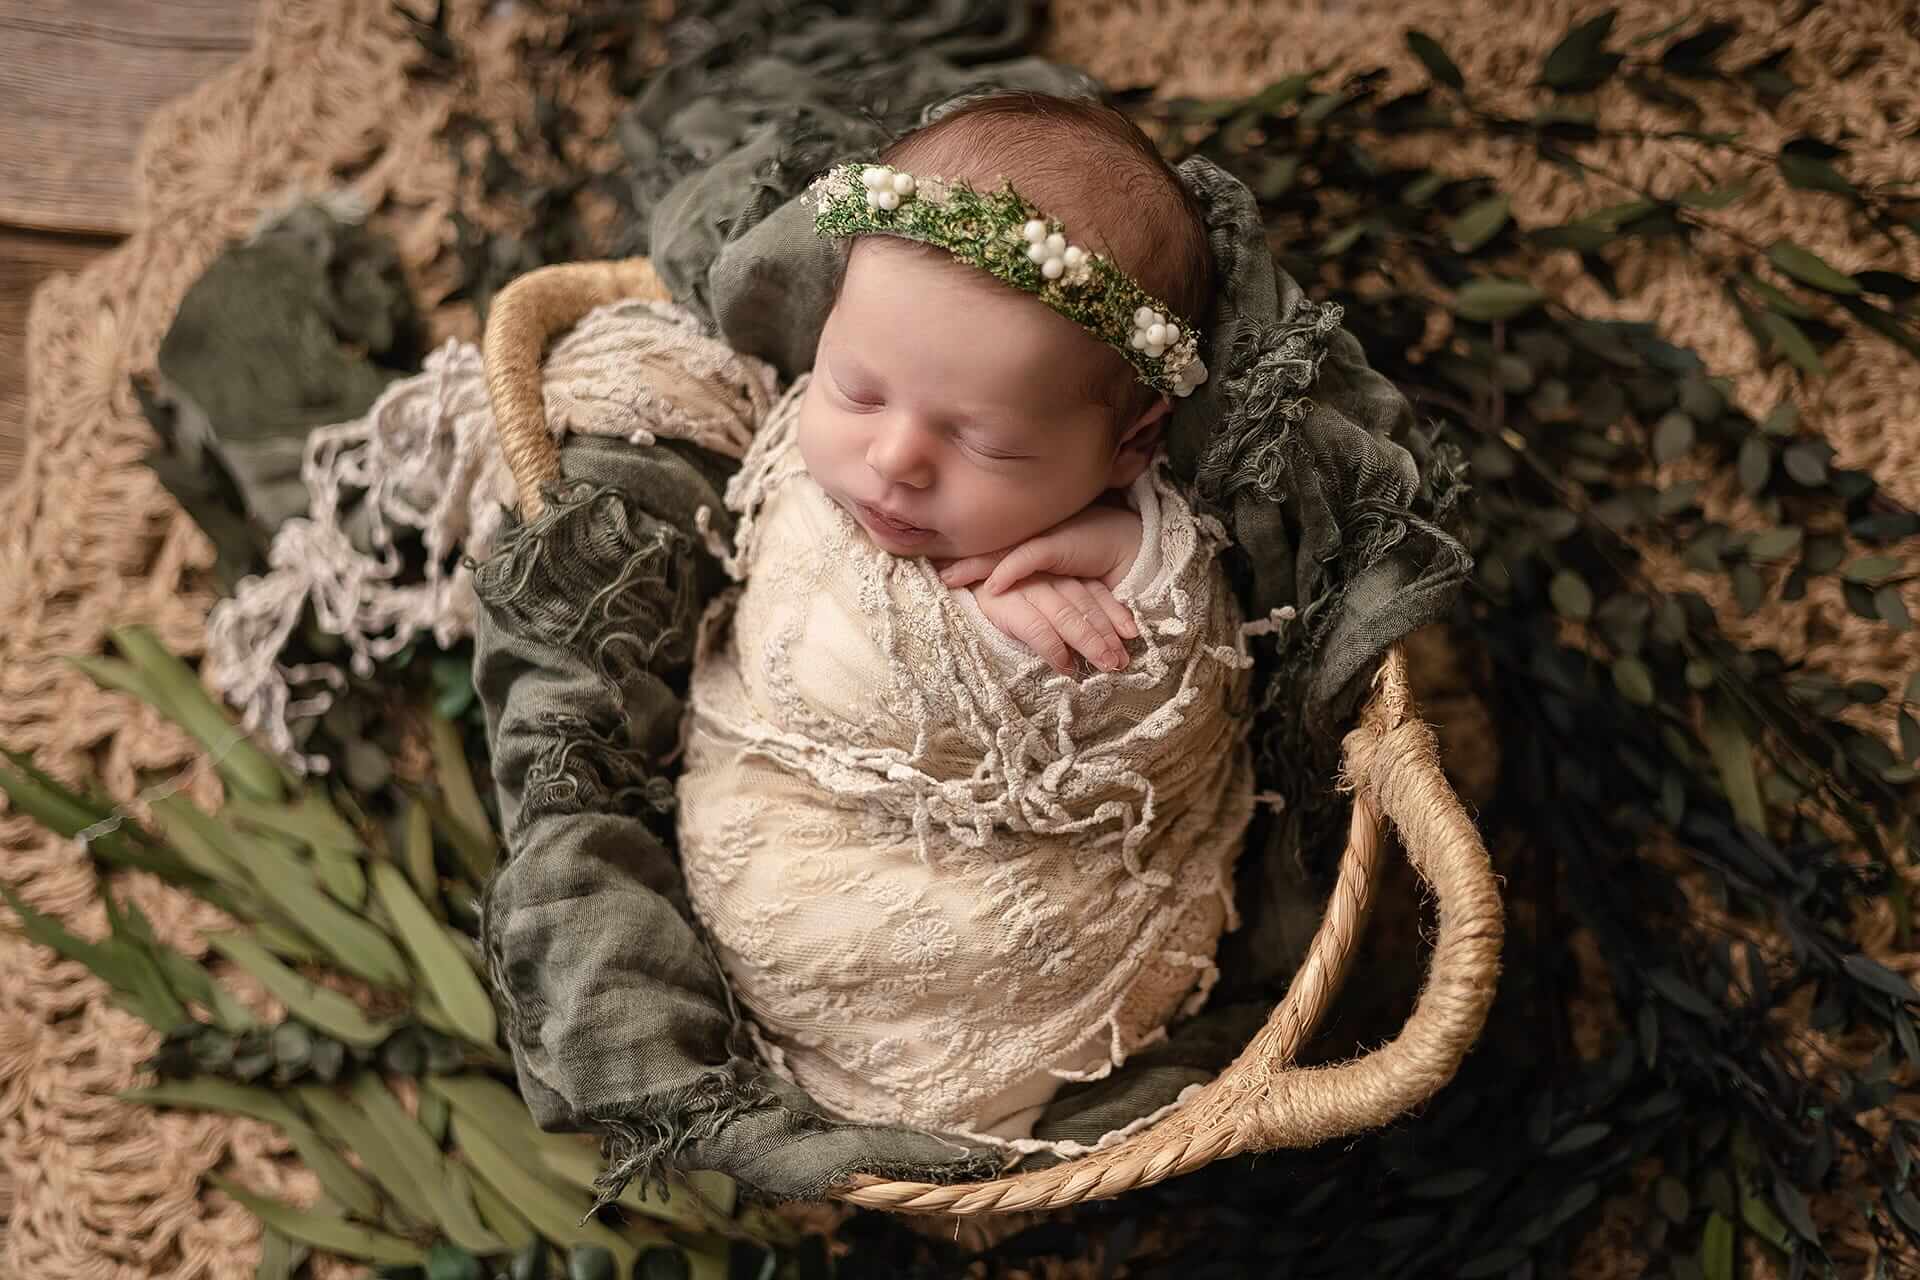 Un bébé nouveau-né est endormi dans un panier entouré de feuilles vertes.